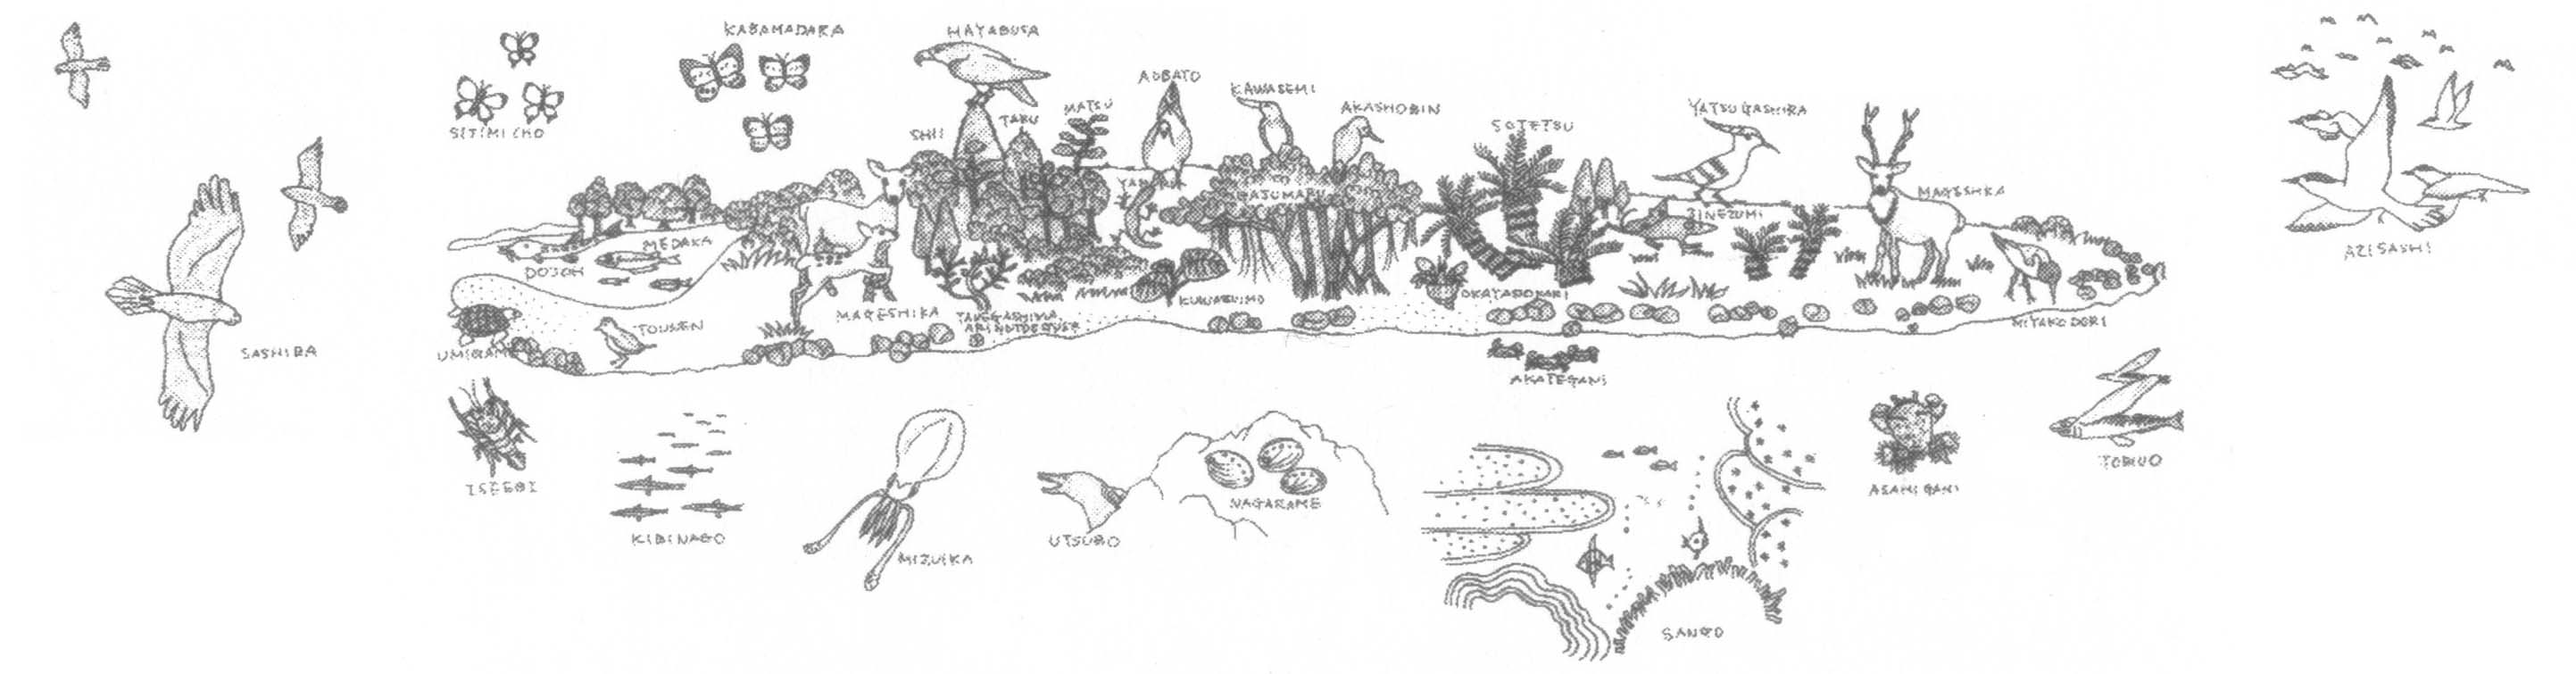 馬毛島の生物
馬毛島の自然を守る会 作成